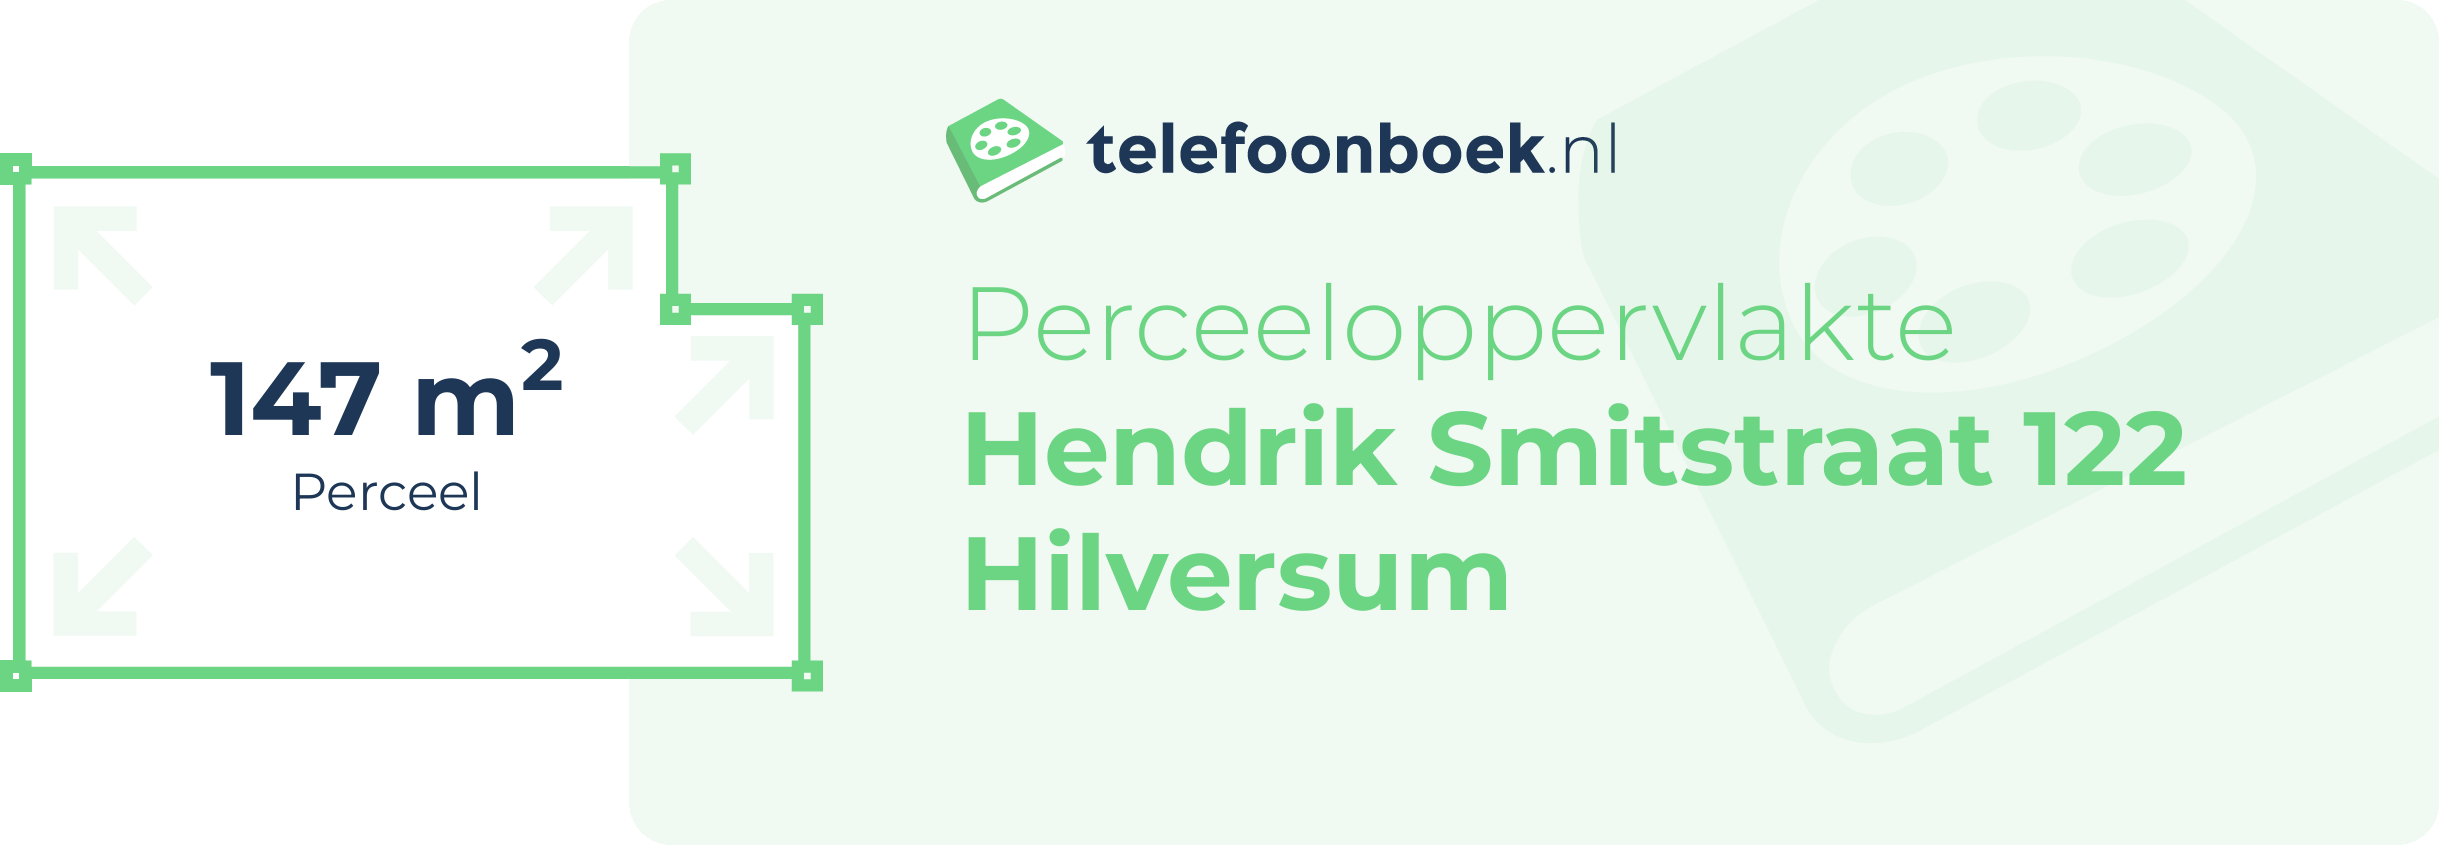 Perceeloppervlakte Hendrik Smitstraat 122 Hilversum